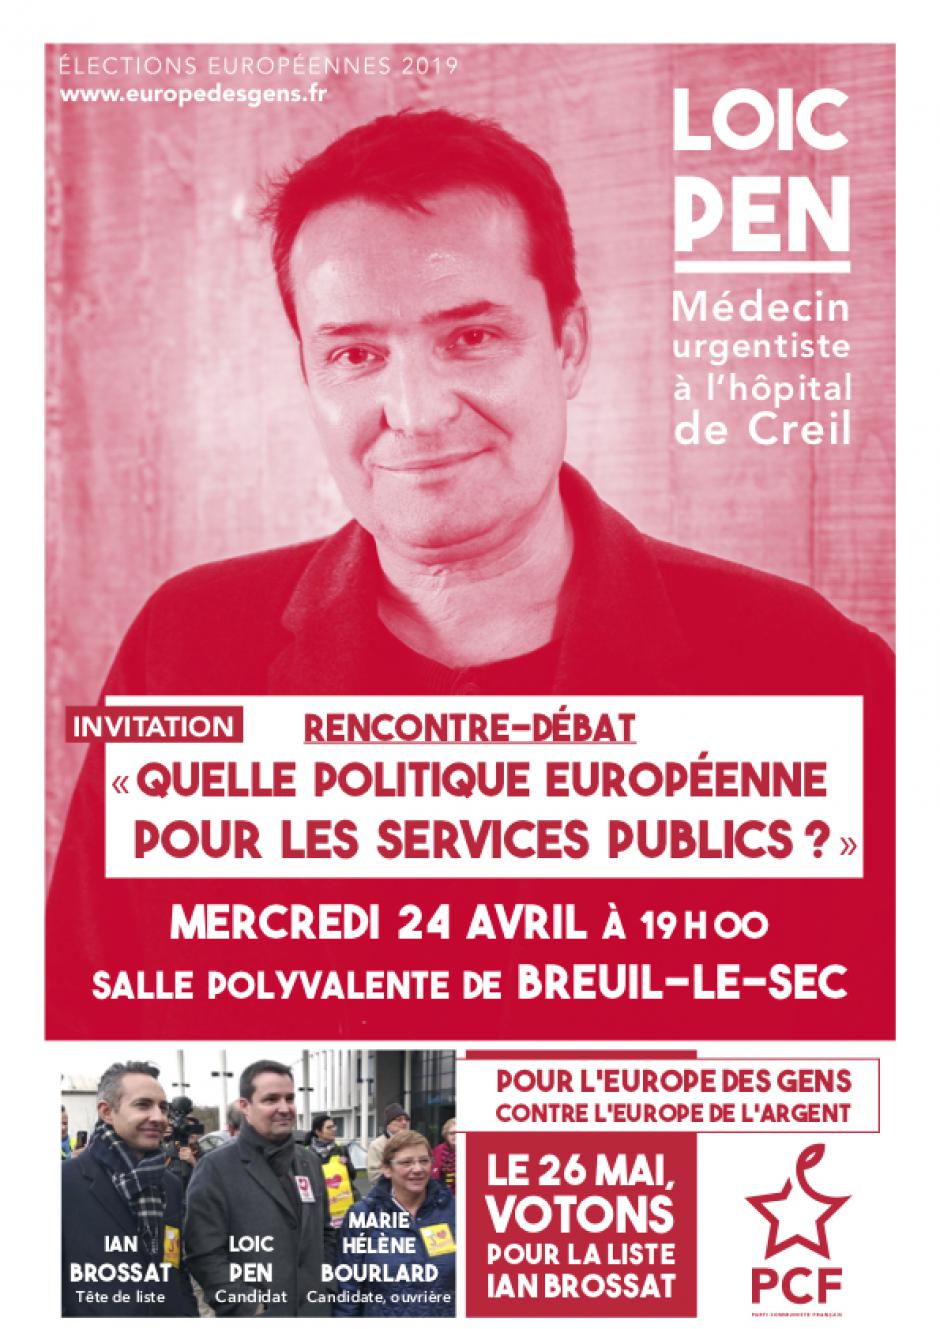 24 avril, Breuil-le-Sec - Européennes 2019 : rencontre-débat avec le candidat Loïc Pen